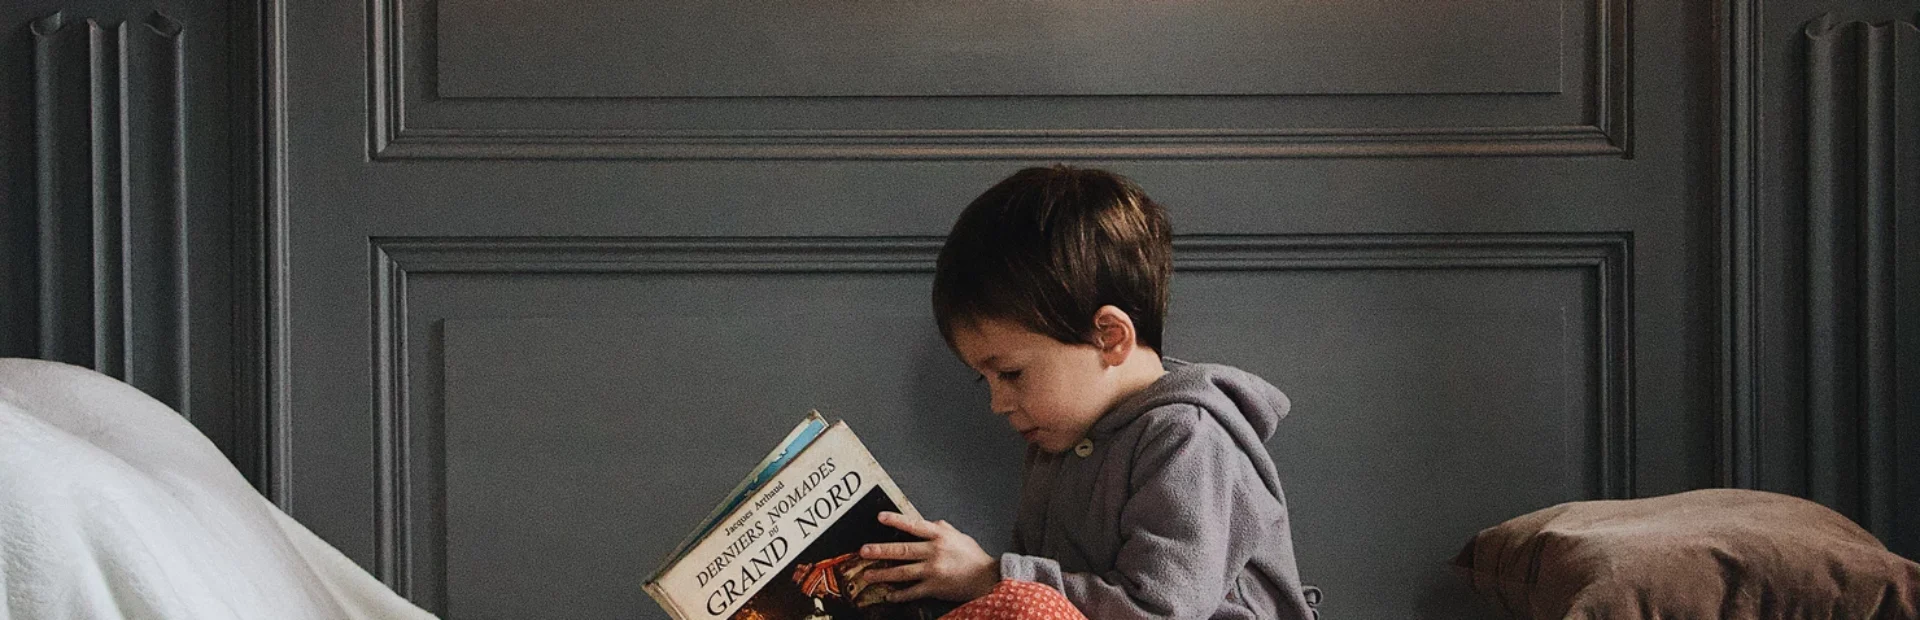 Abril, Mes del Libro: Una oportunidad para fomentar el gusto por la lectura en familia | El Calbucano